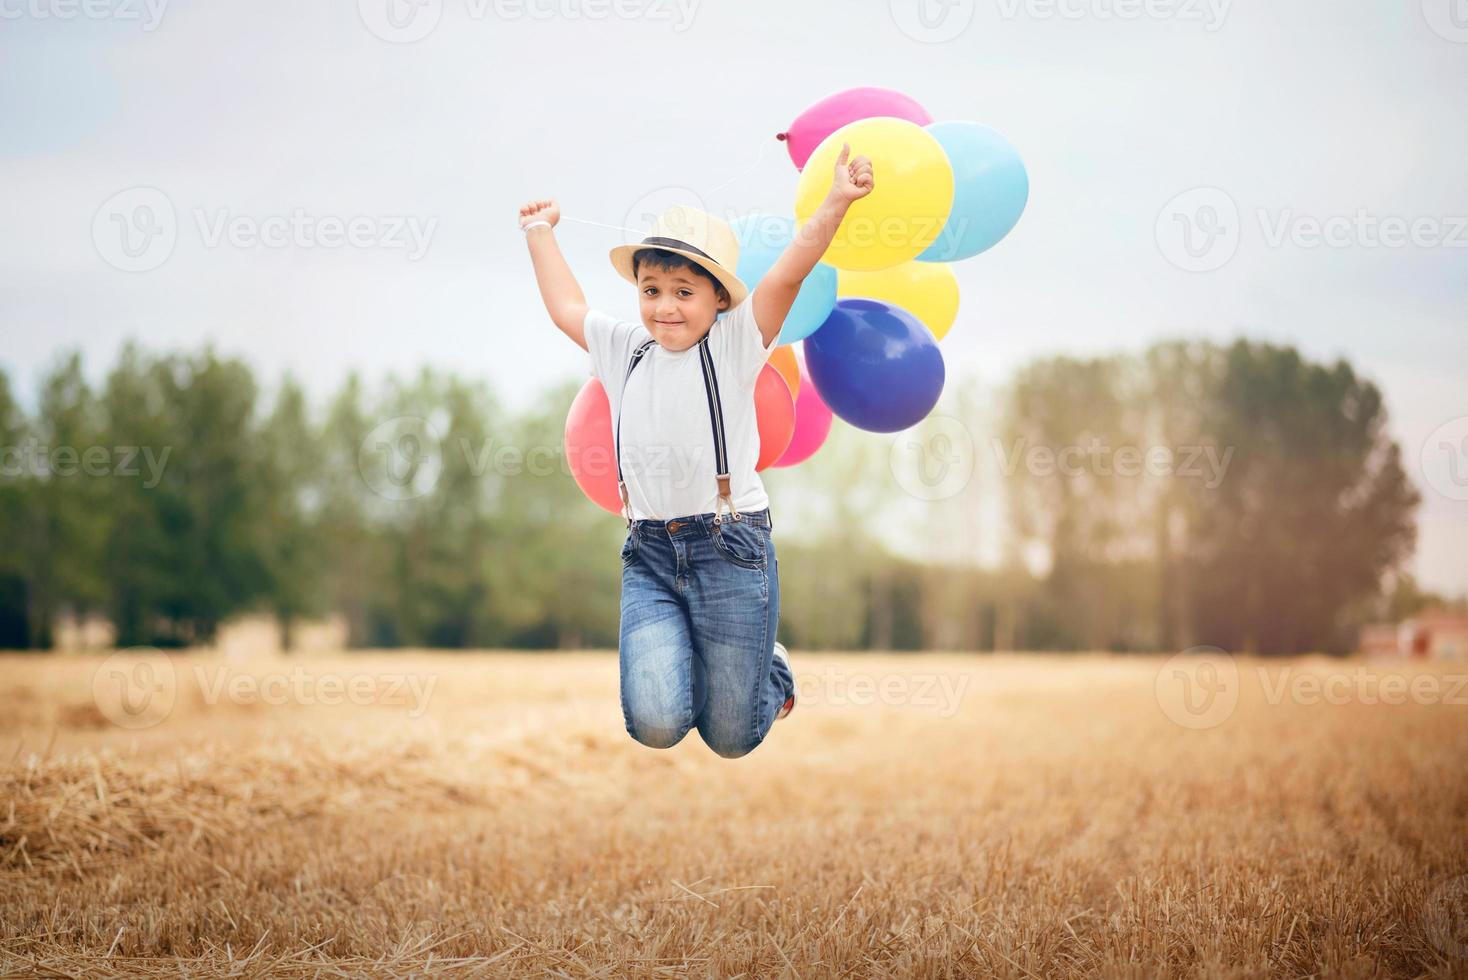 jongen die met ballonnen in het veld springt foto